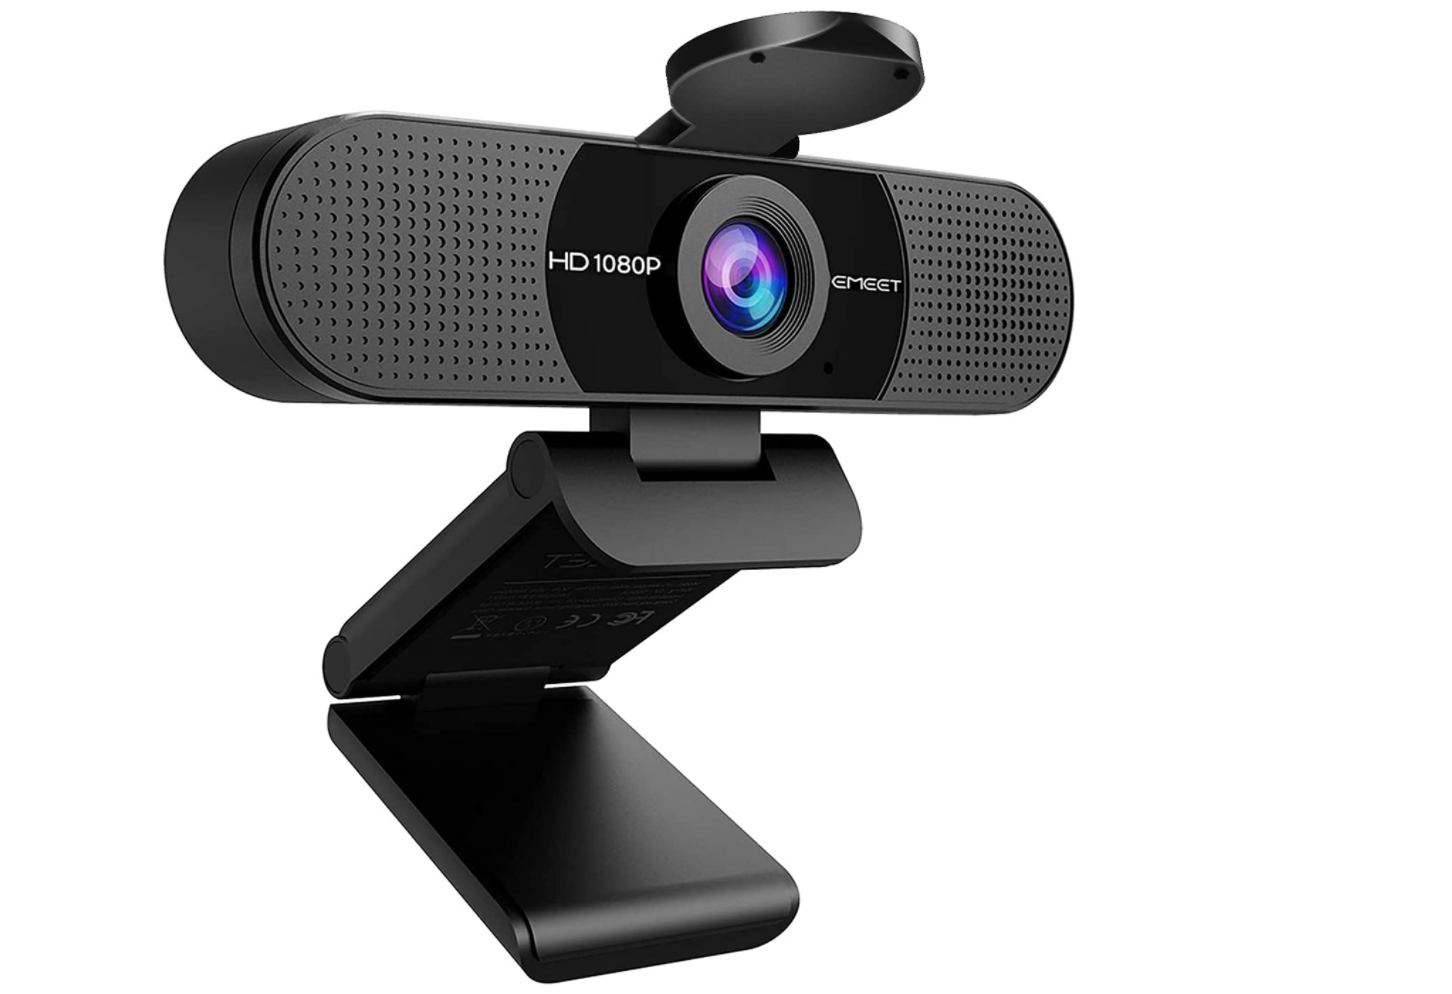 eMeet SmartCam C960 - Best budget webcam runner-up